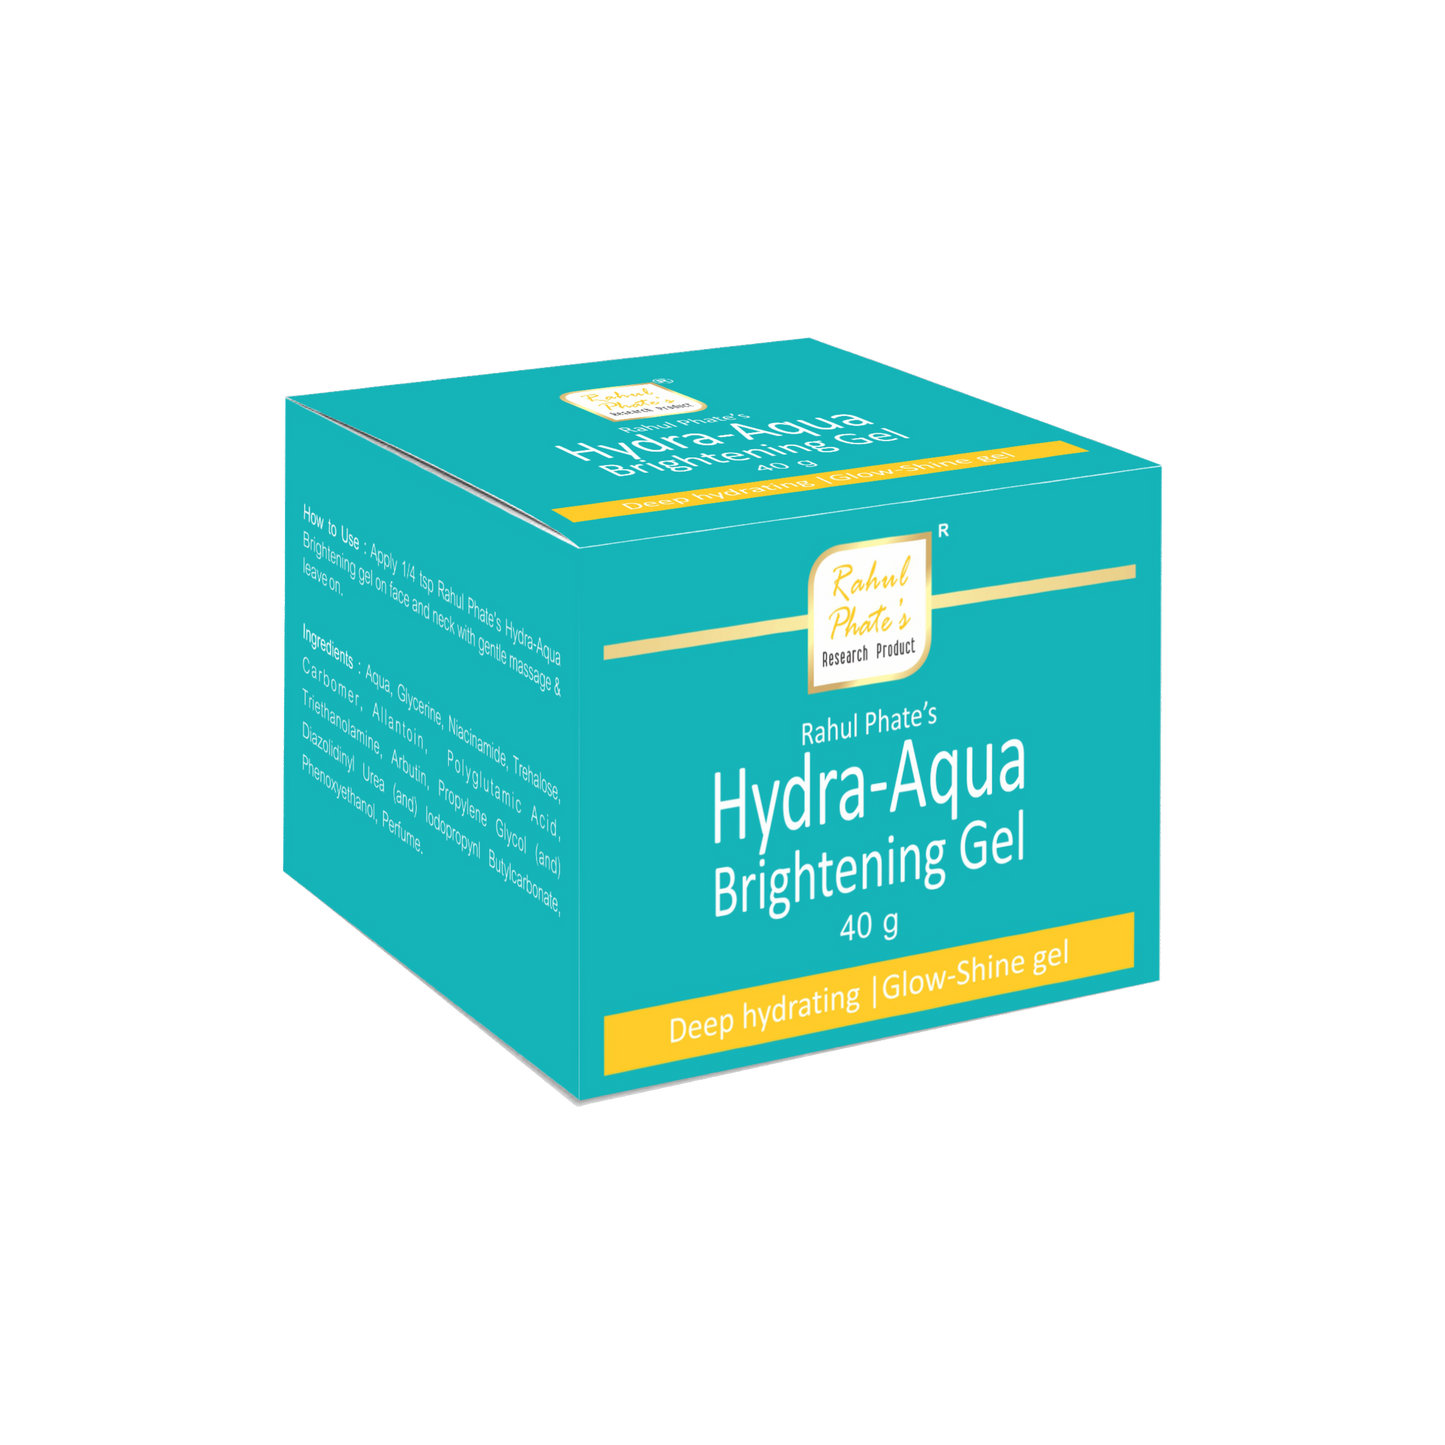 Hydra-Aqua Brightening Gel